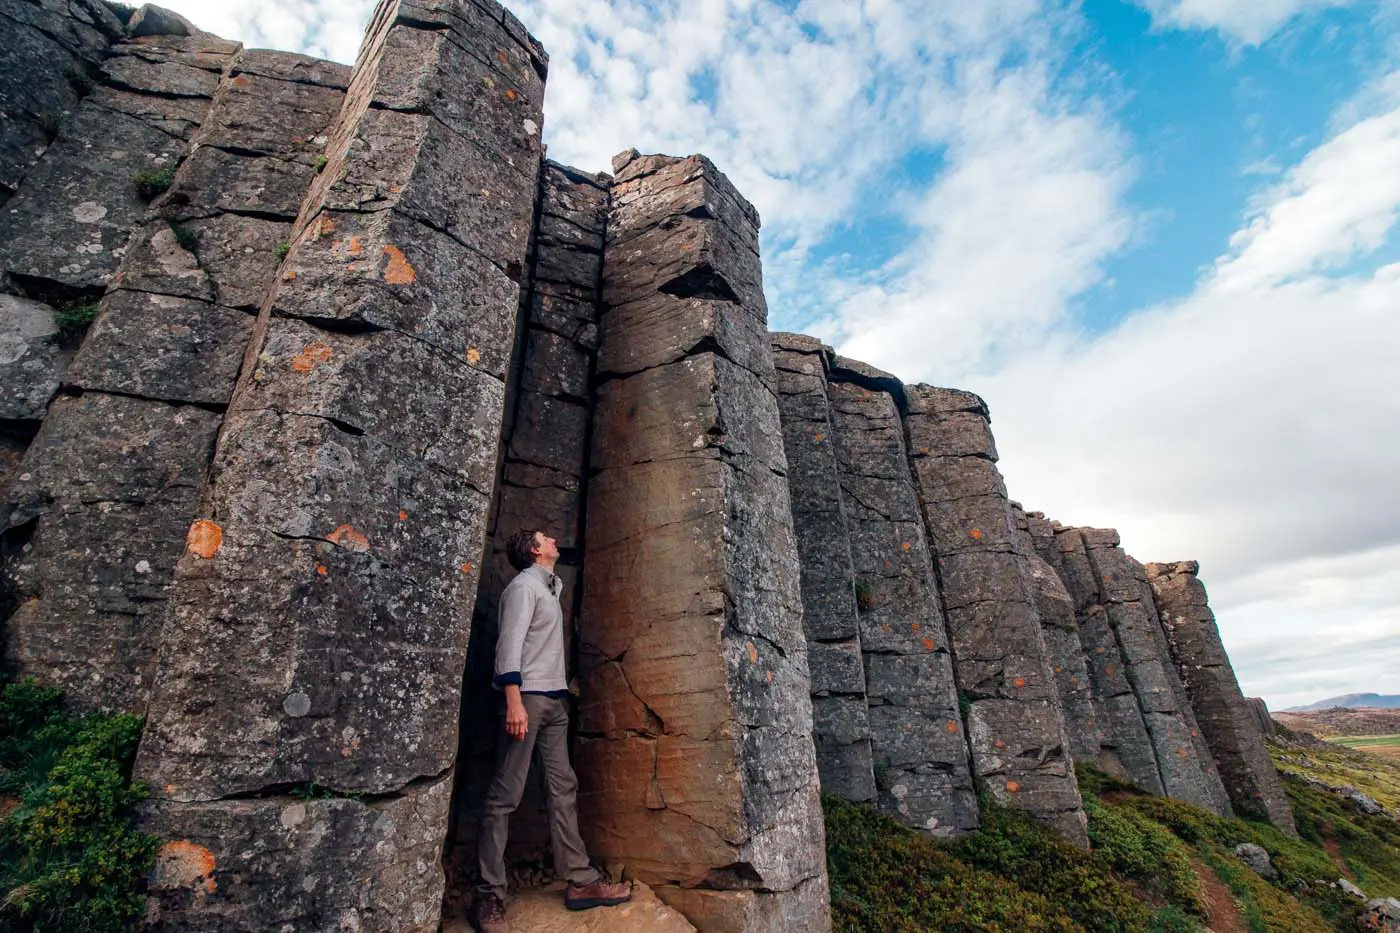 Man standing among the basalt columns of the Gerduberg Cliffs